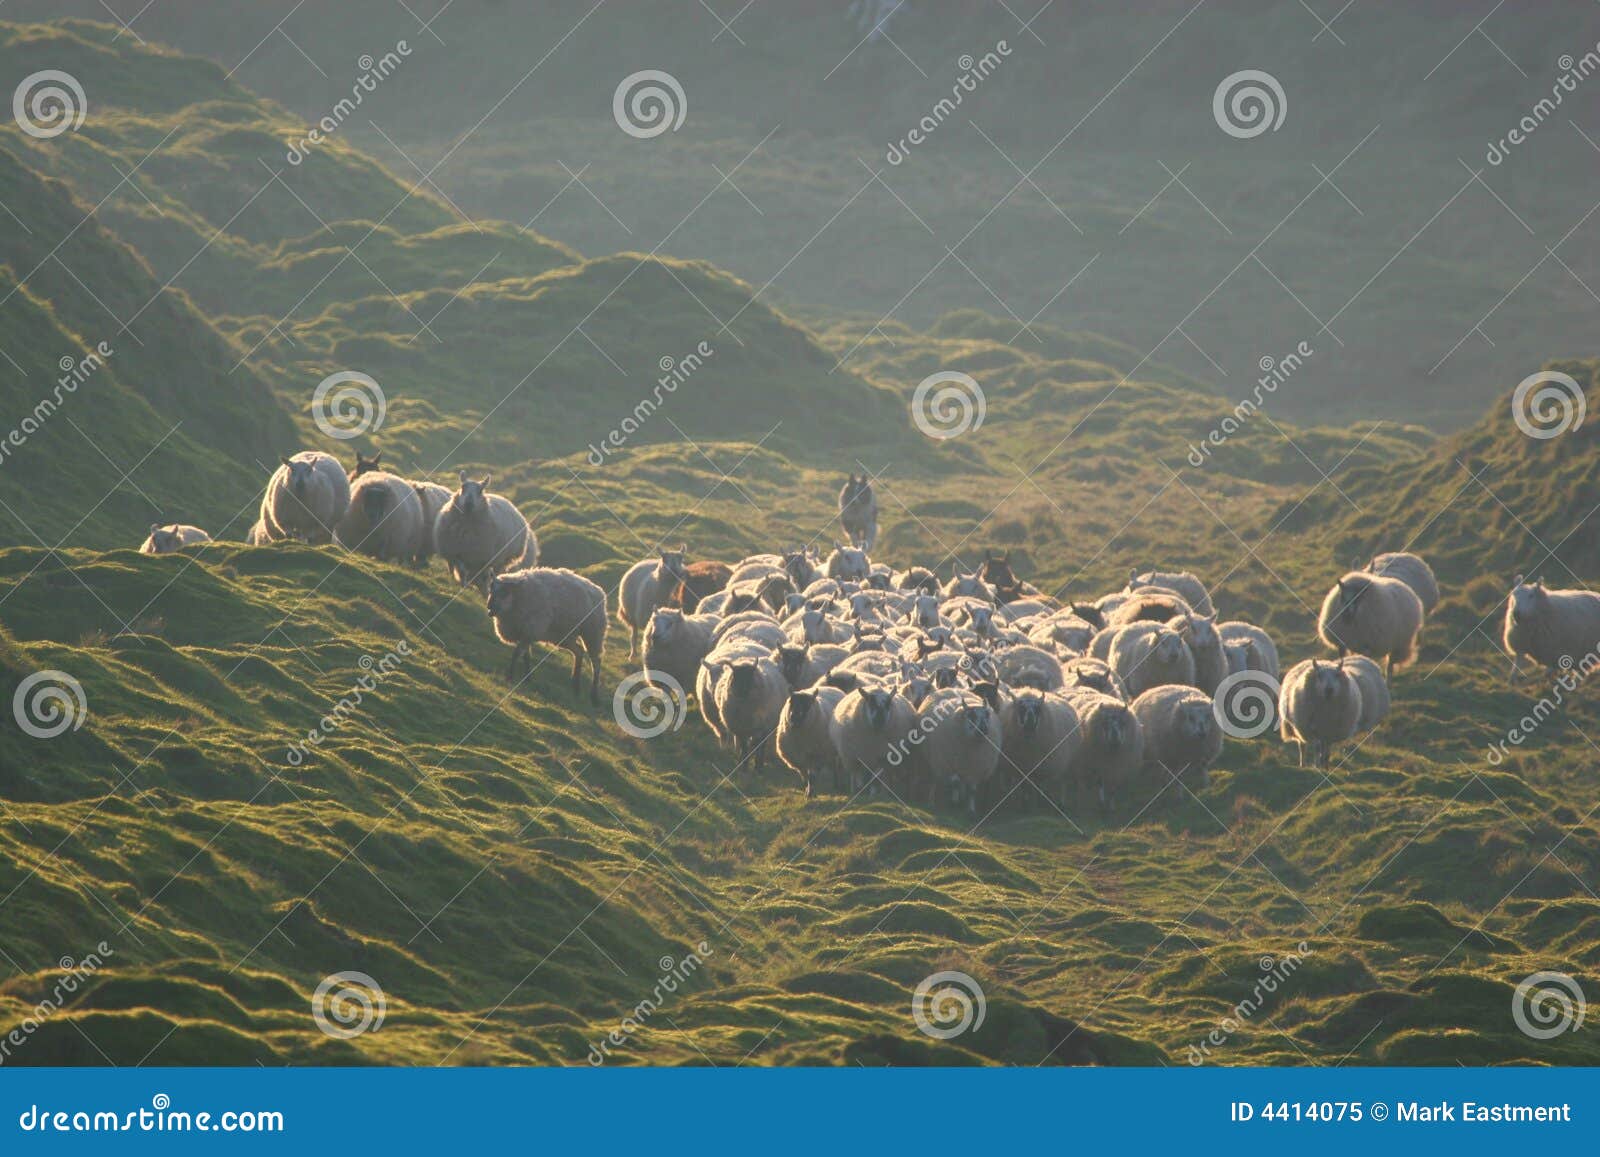 herding the flock